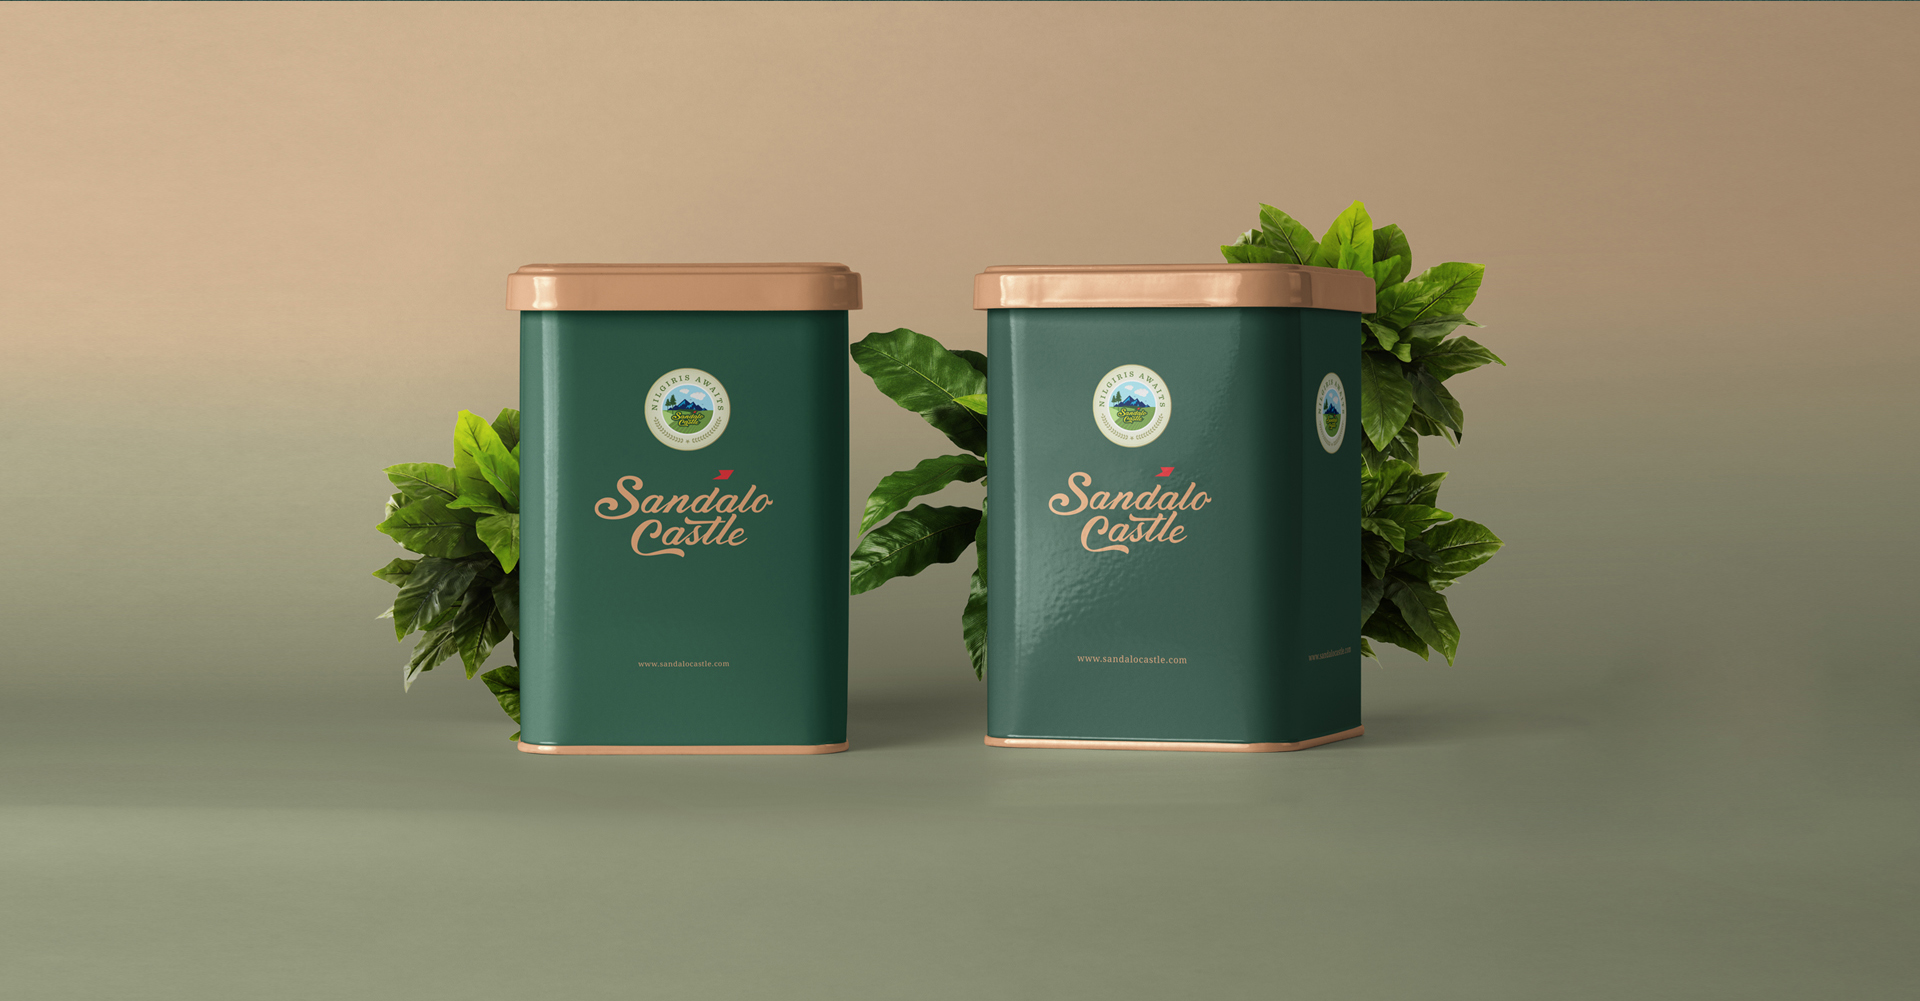 Sandalo Castle resort Nilgiri branding: Tea powder gift packaging design